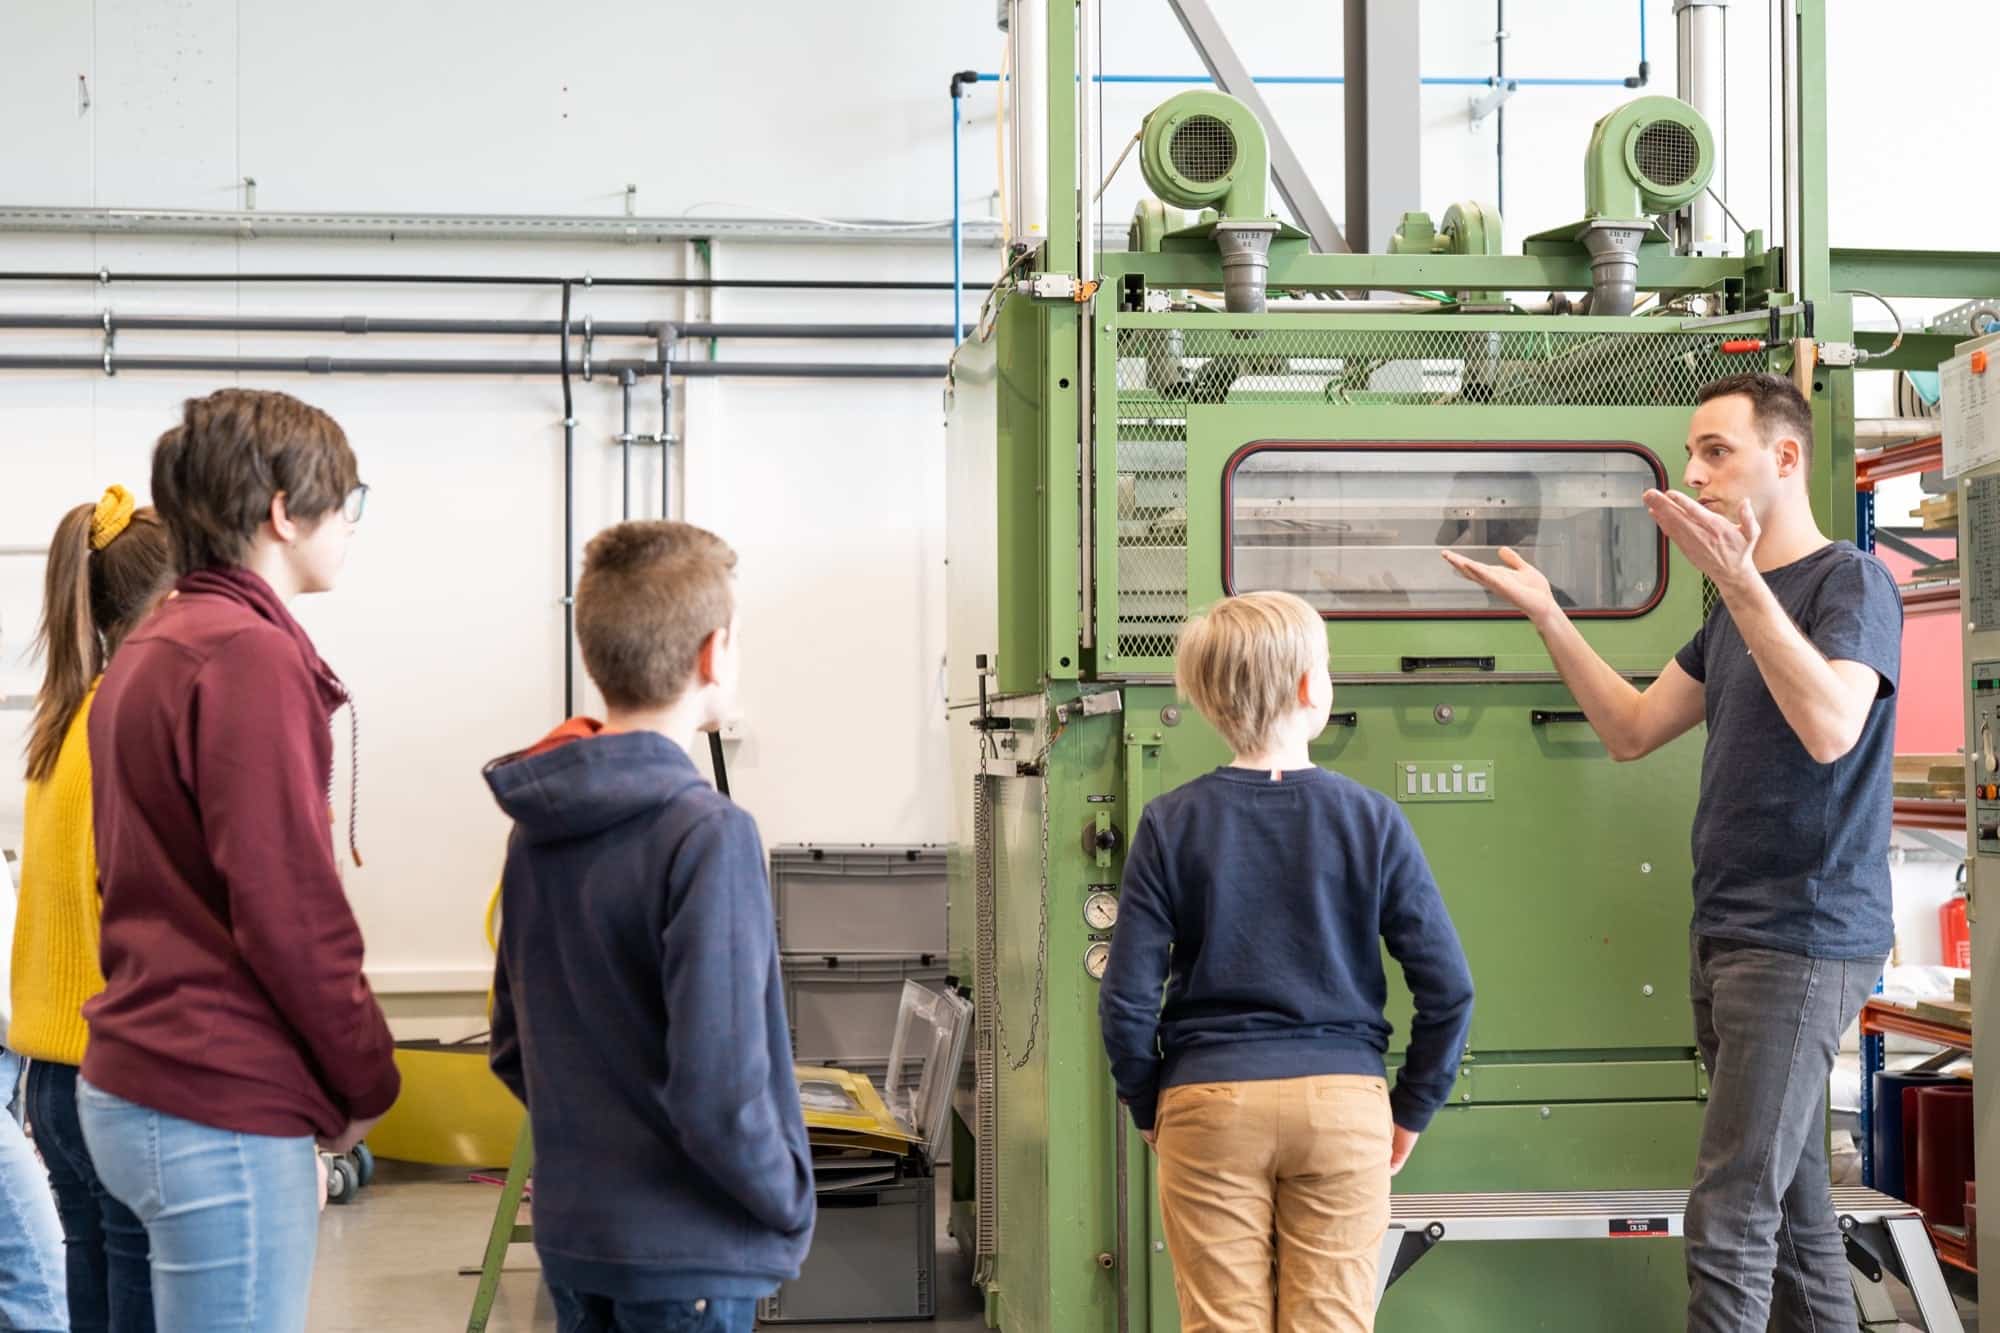 Een van de best uitgeruste opleidingslabo’s voor kunststoffen in de Benelux. In het lab leren trainees alles over technieken, productie en ontwikkeling van nieuwe materialen. 